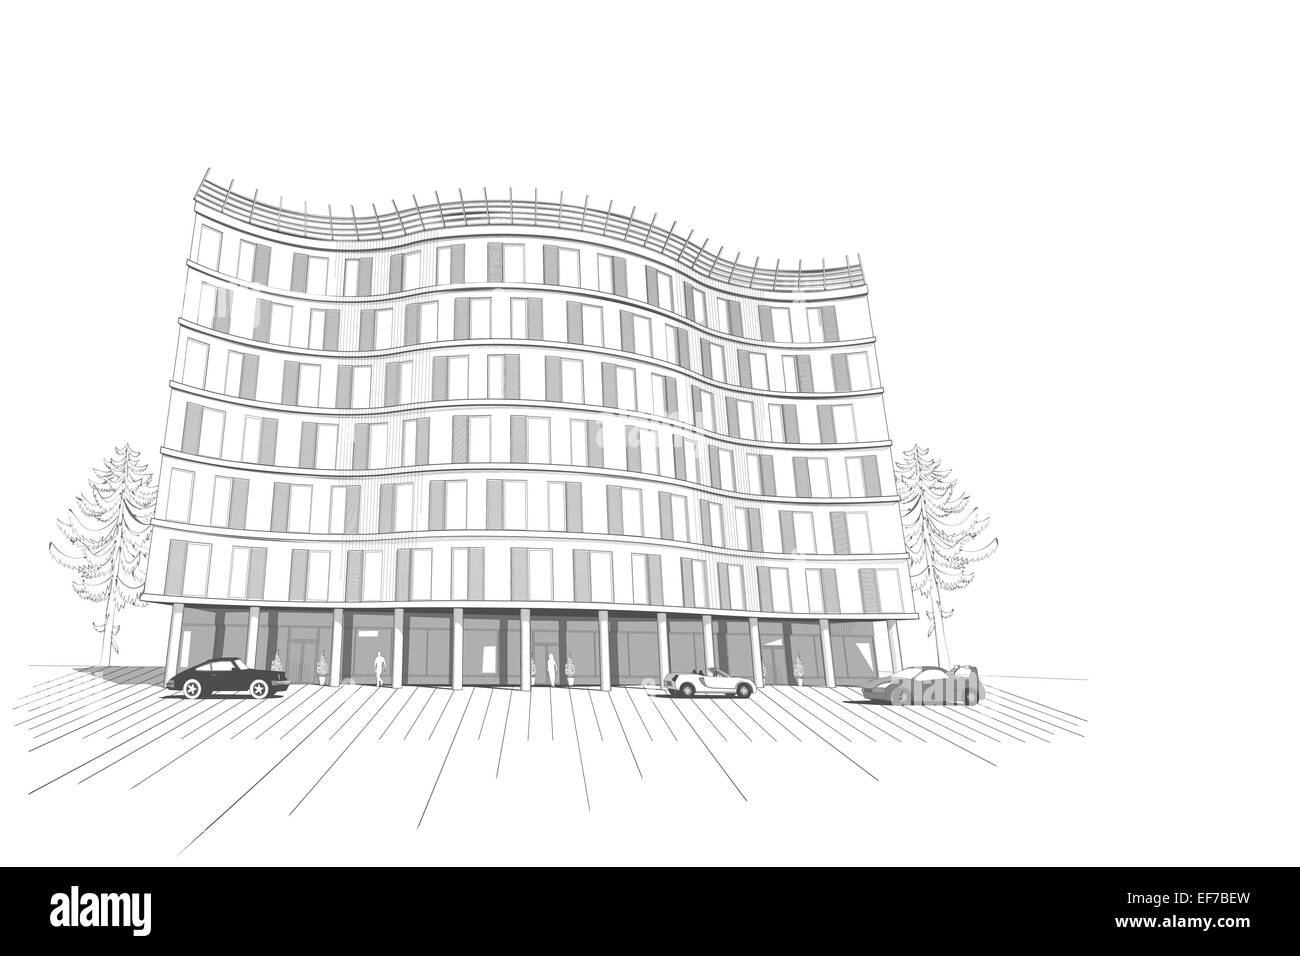 Architecture vecteur fond monochrome blanc avec appartement moderne isolé ou bureau immeuble de plusieurs étages Illustration de Vecteur